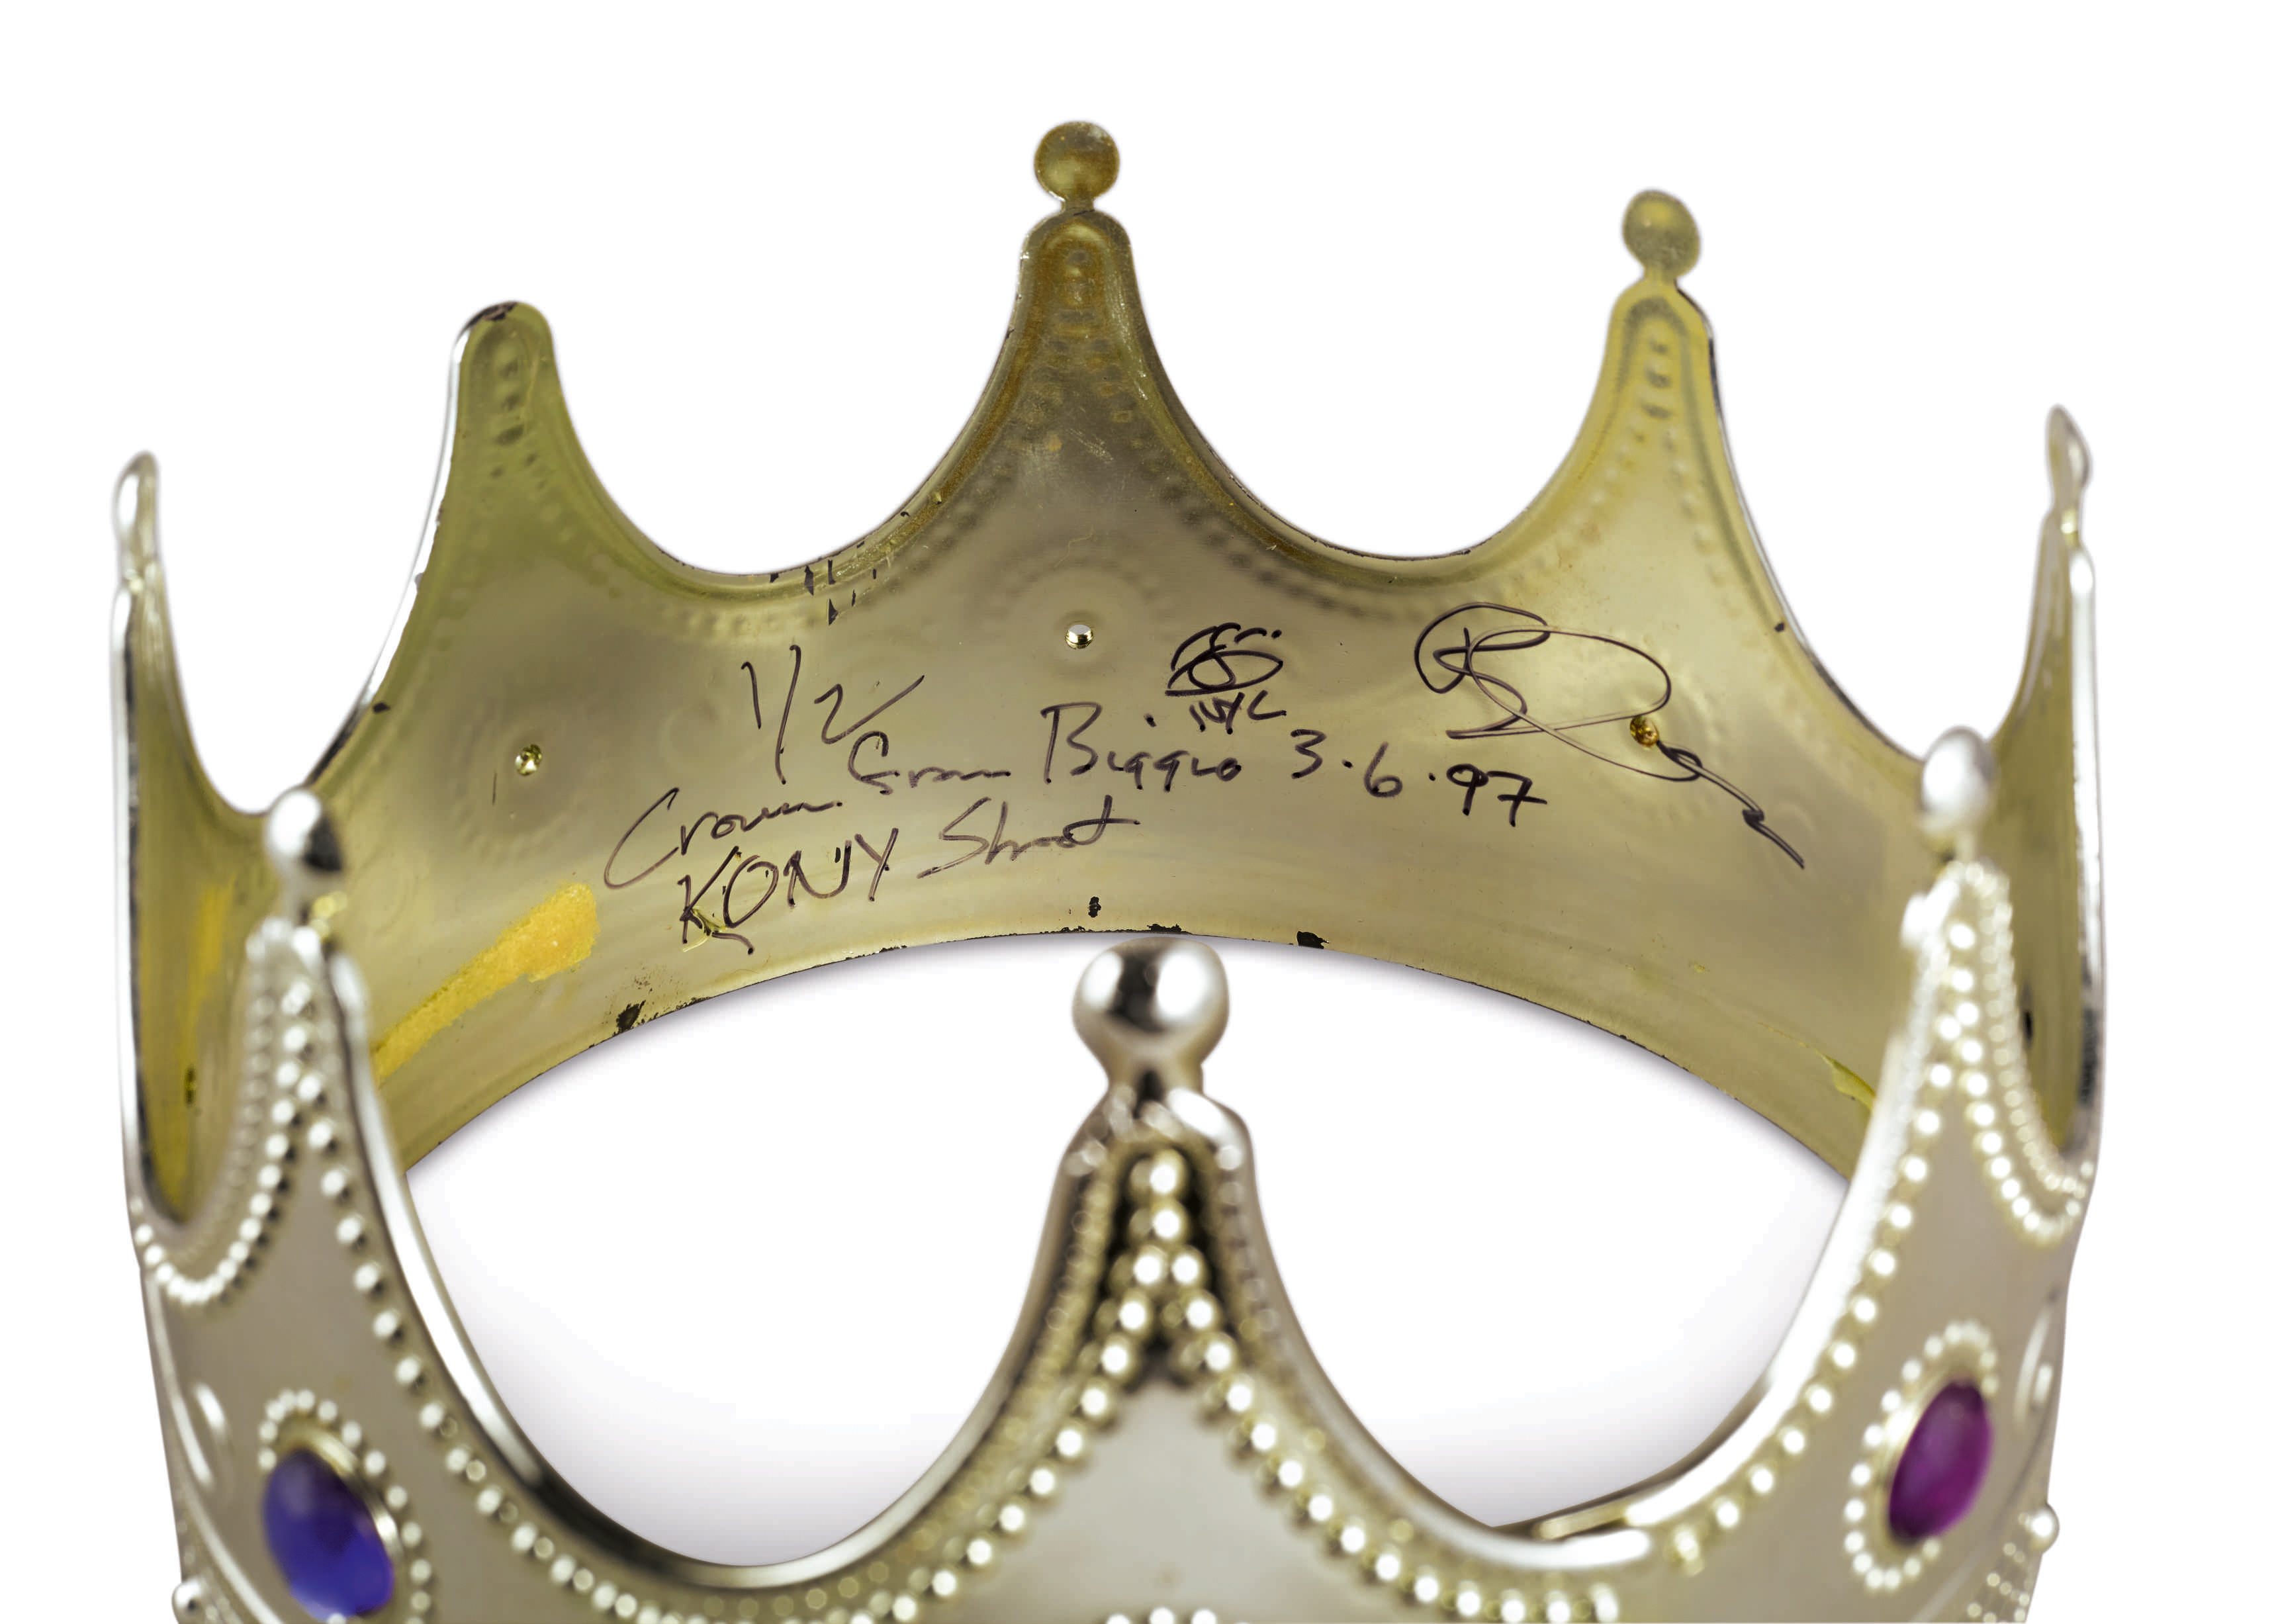 Couronne portée et signée par Notorious B.I.G. lors du photoshoot de Barron Claiborne, 'Notorious B.I.G. as the K.O.N.Y (King of New York)